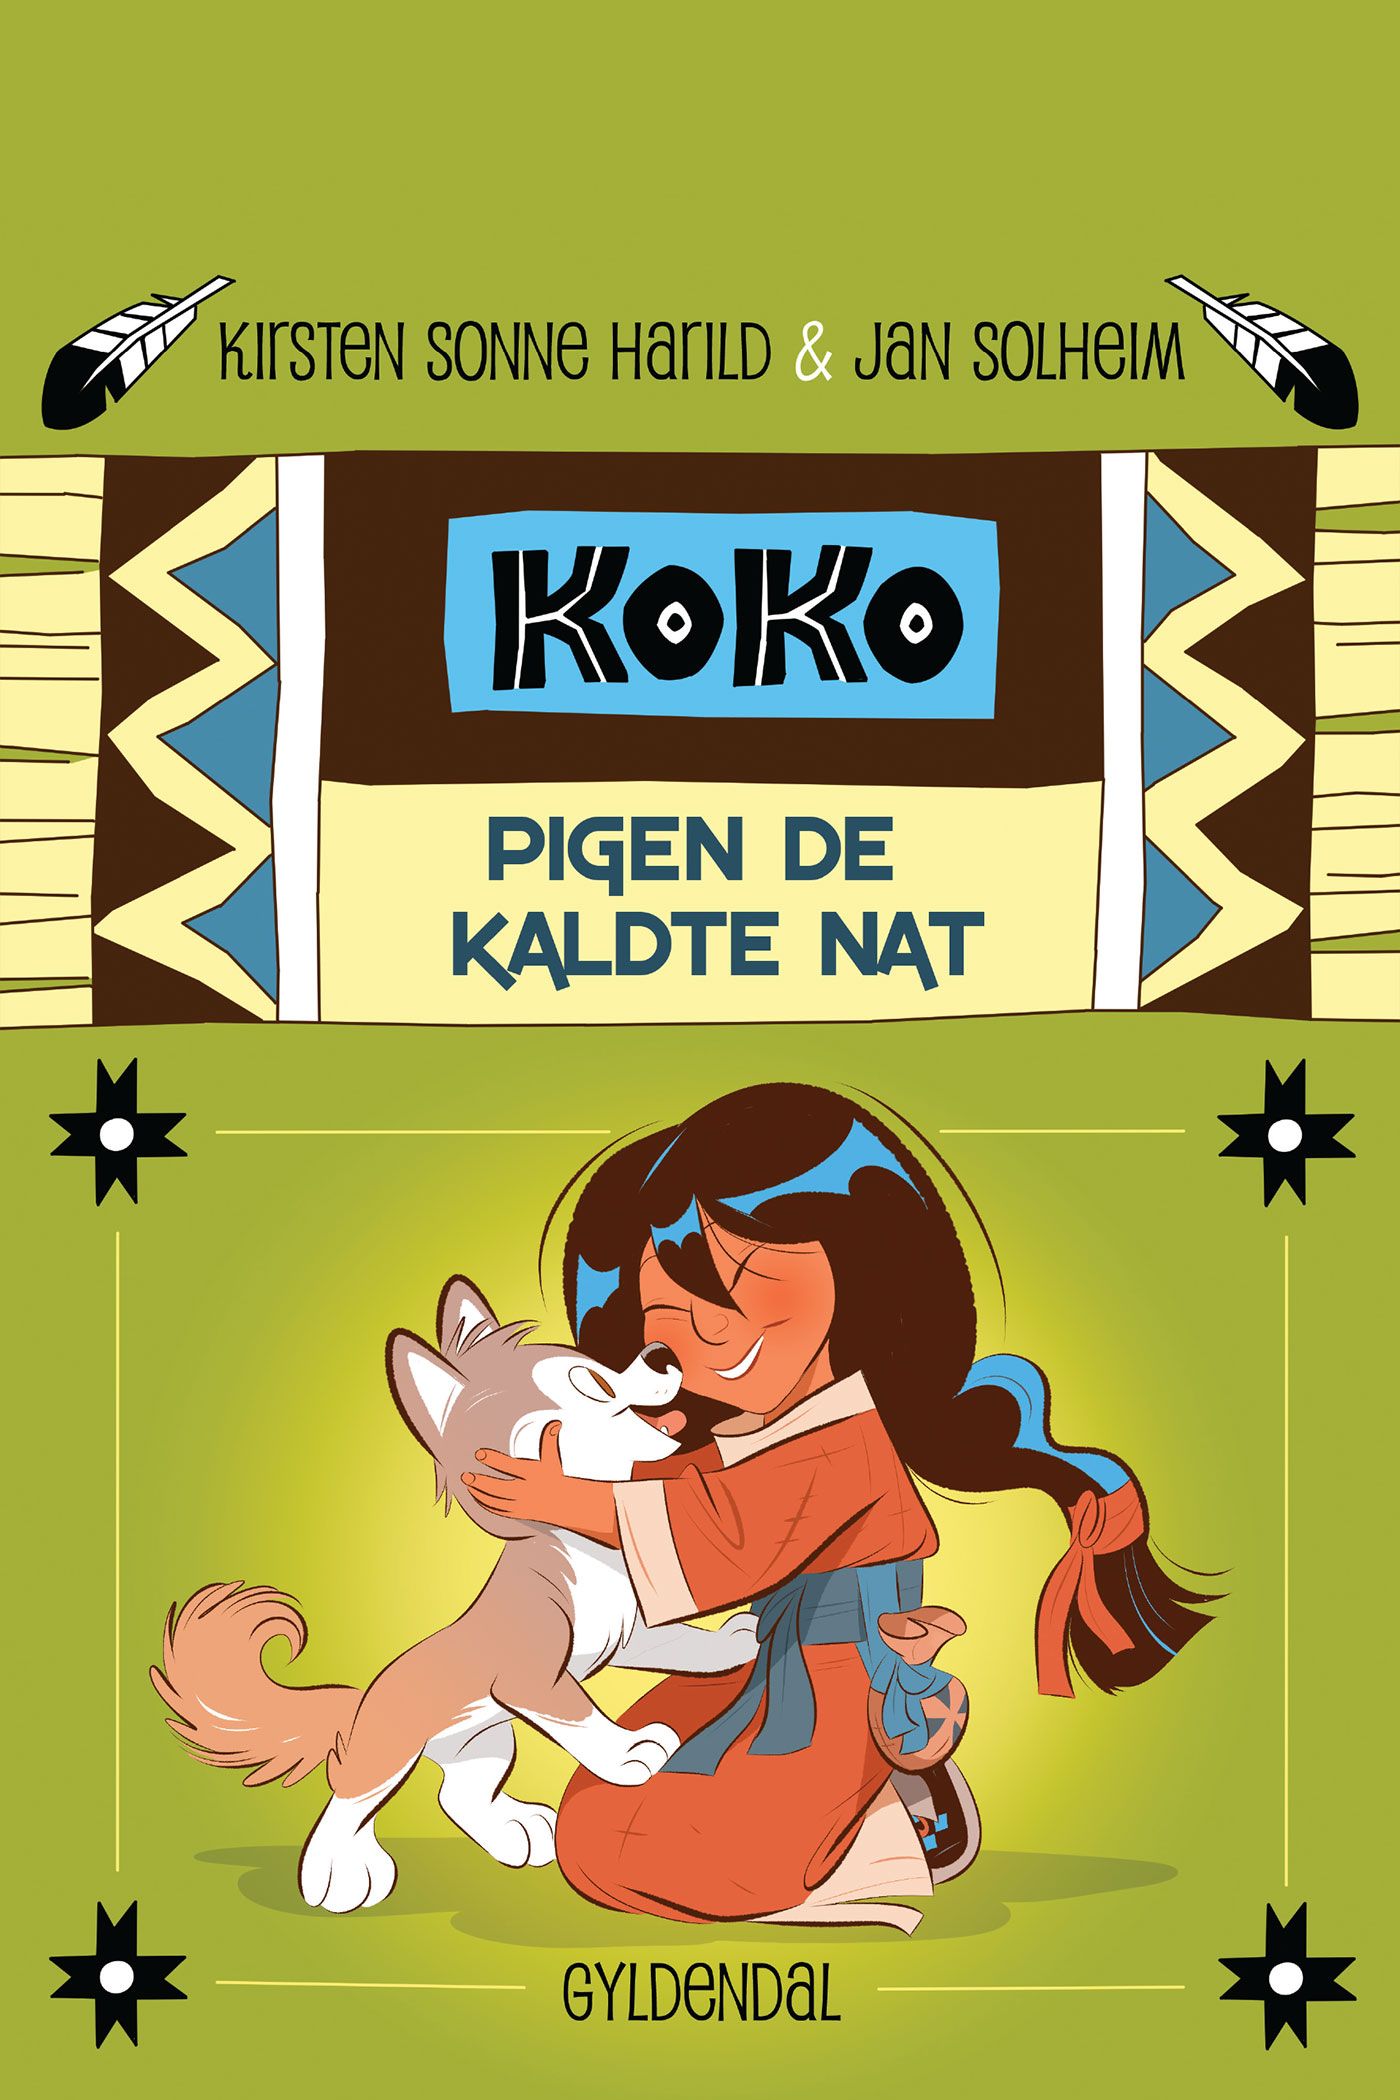 Koko 1 - Pigen de kaldte nat, eBook by Kirsten Sonne Harild